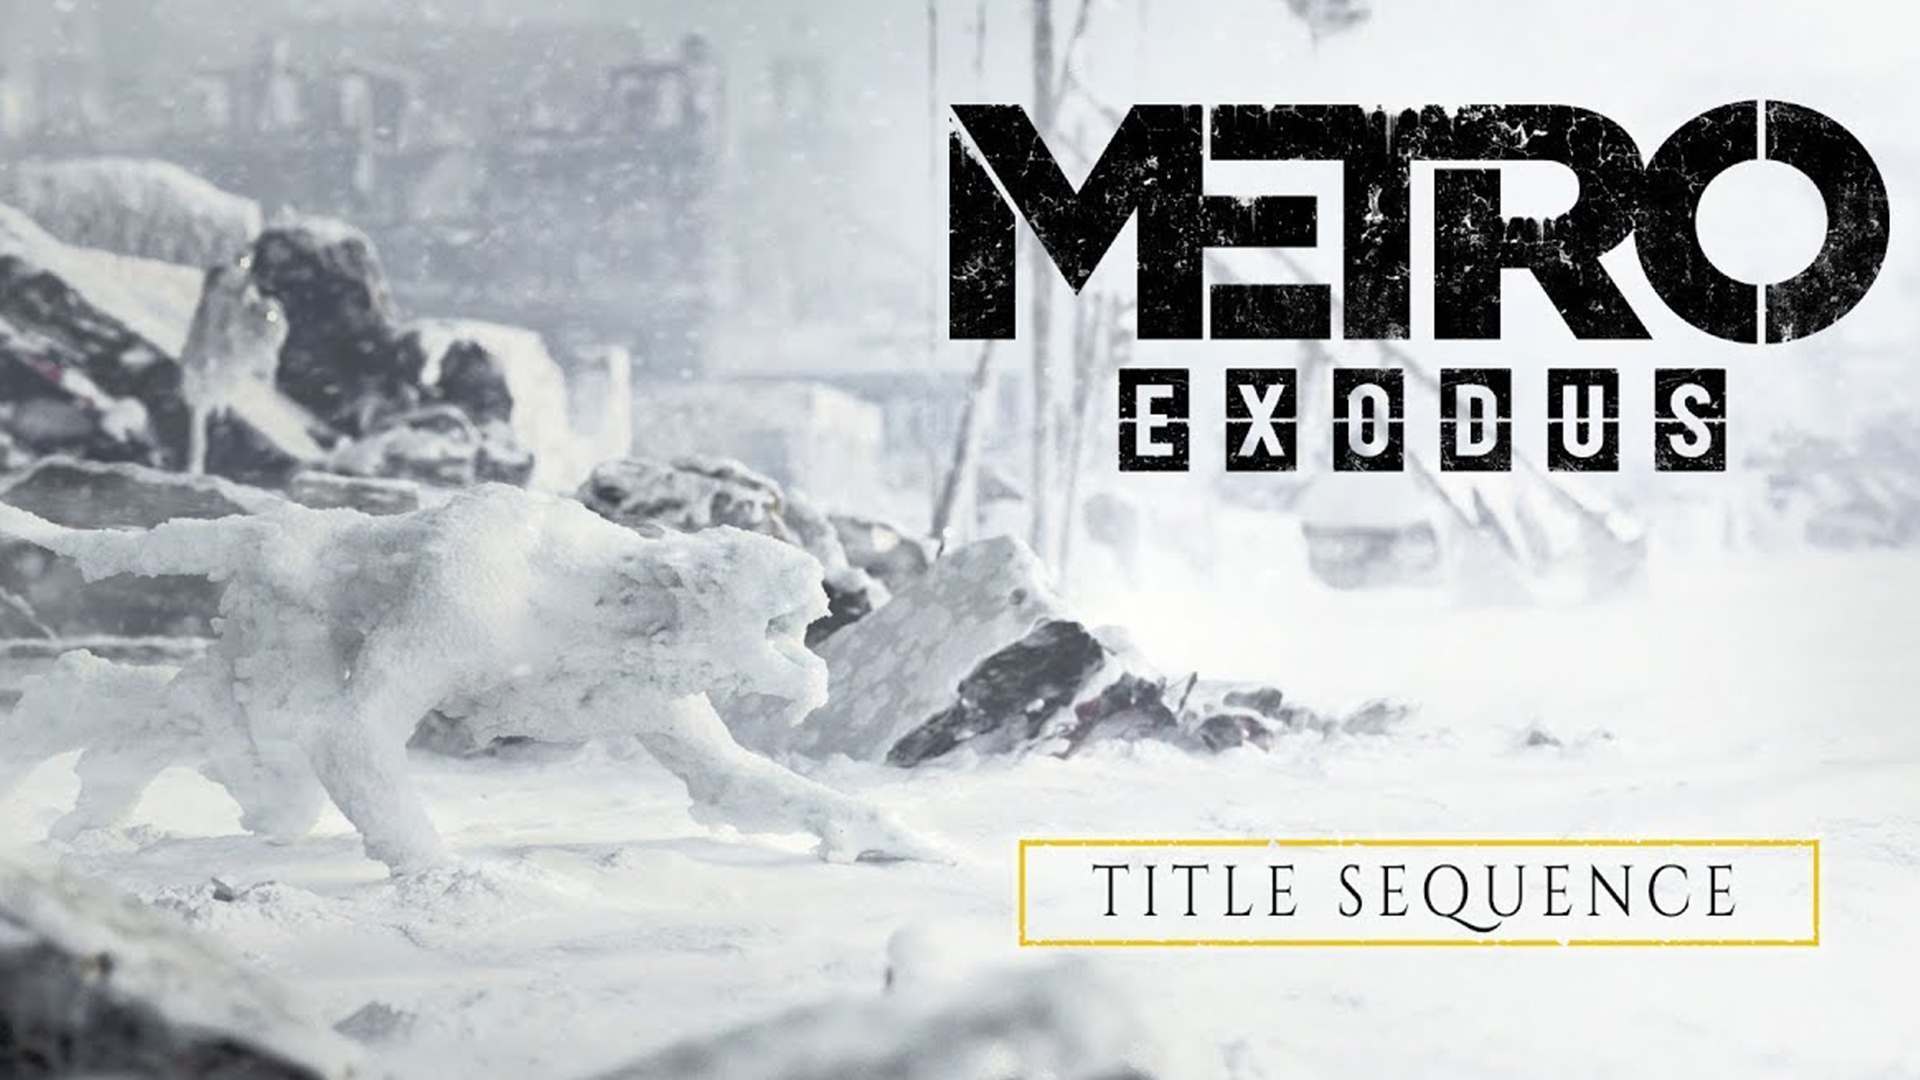 Metro Exodus frÃ¼her fertig als erwartet und geniale Titel Sequence